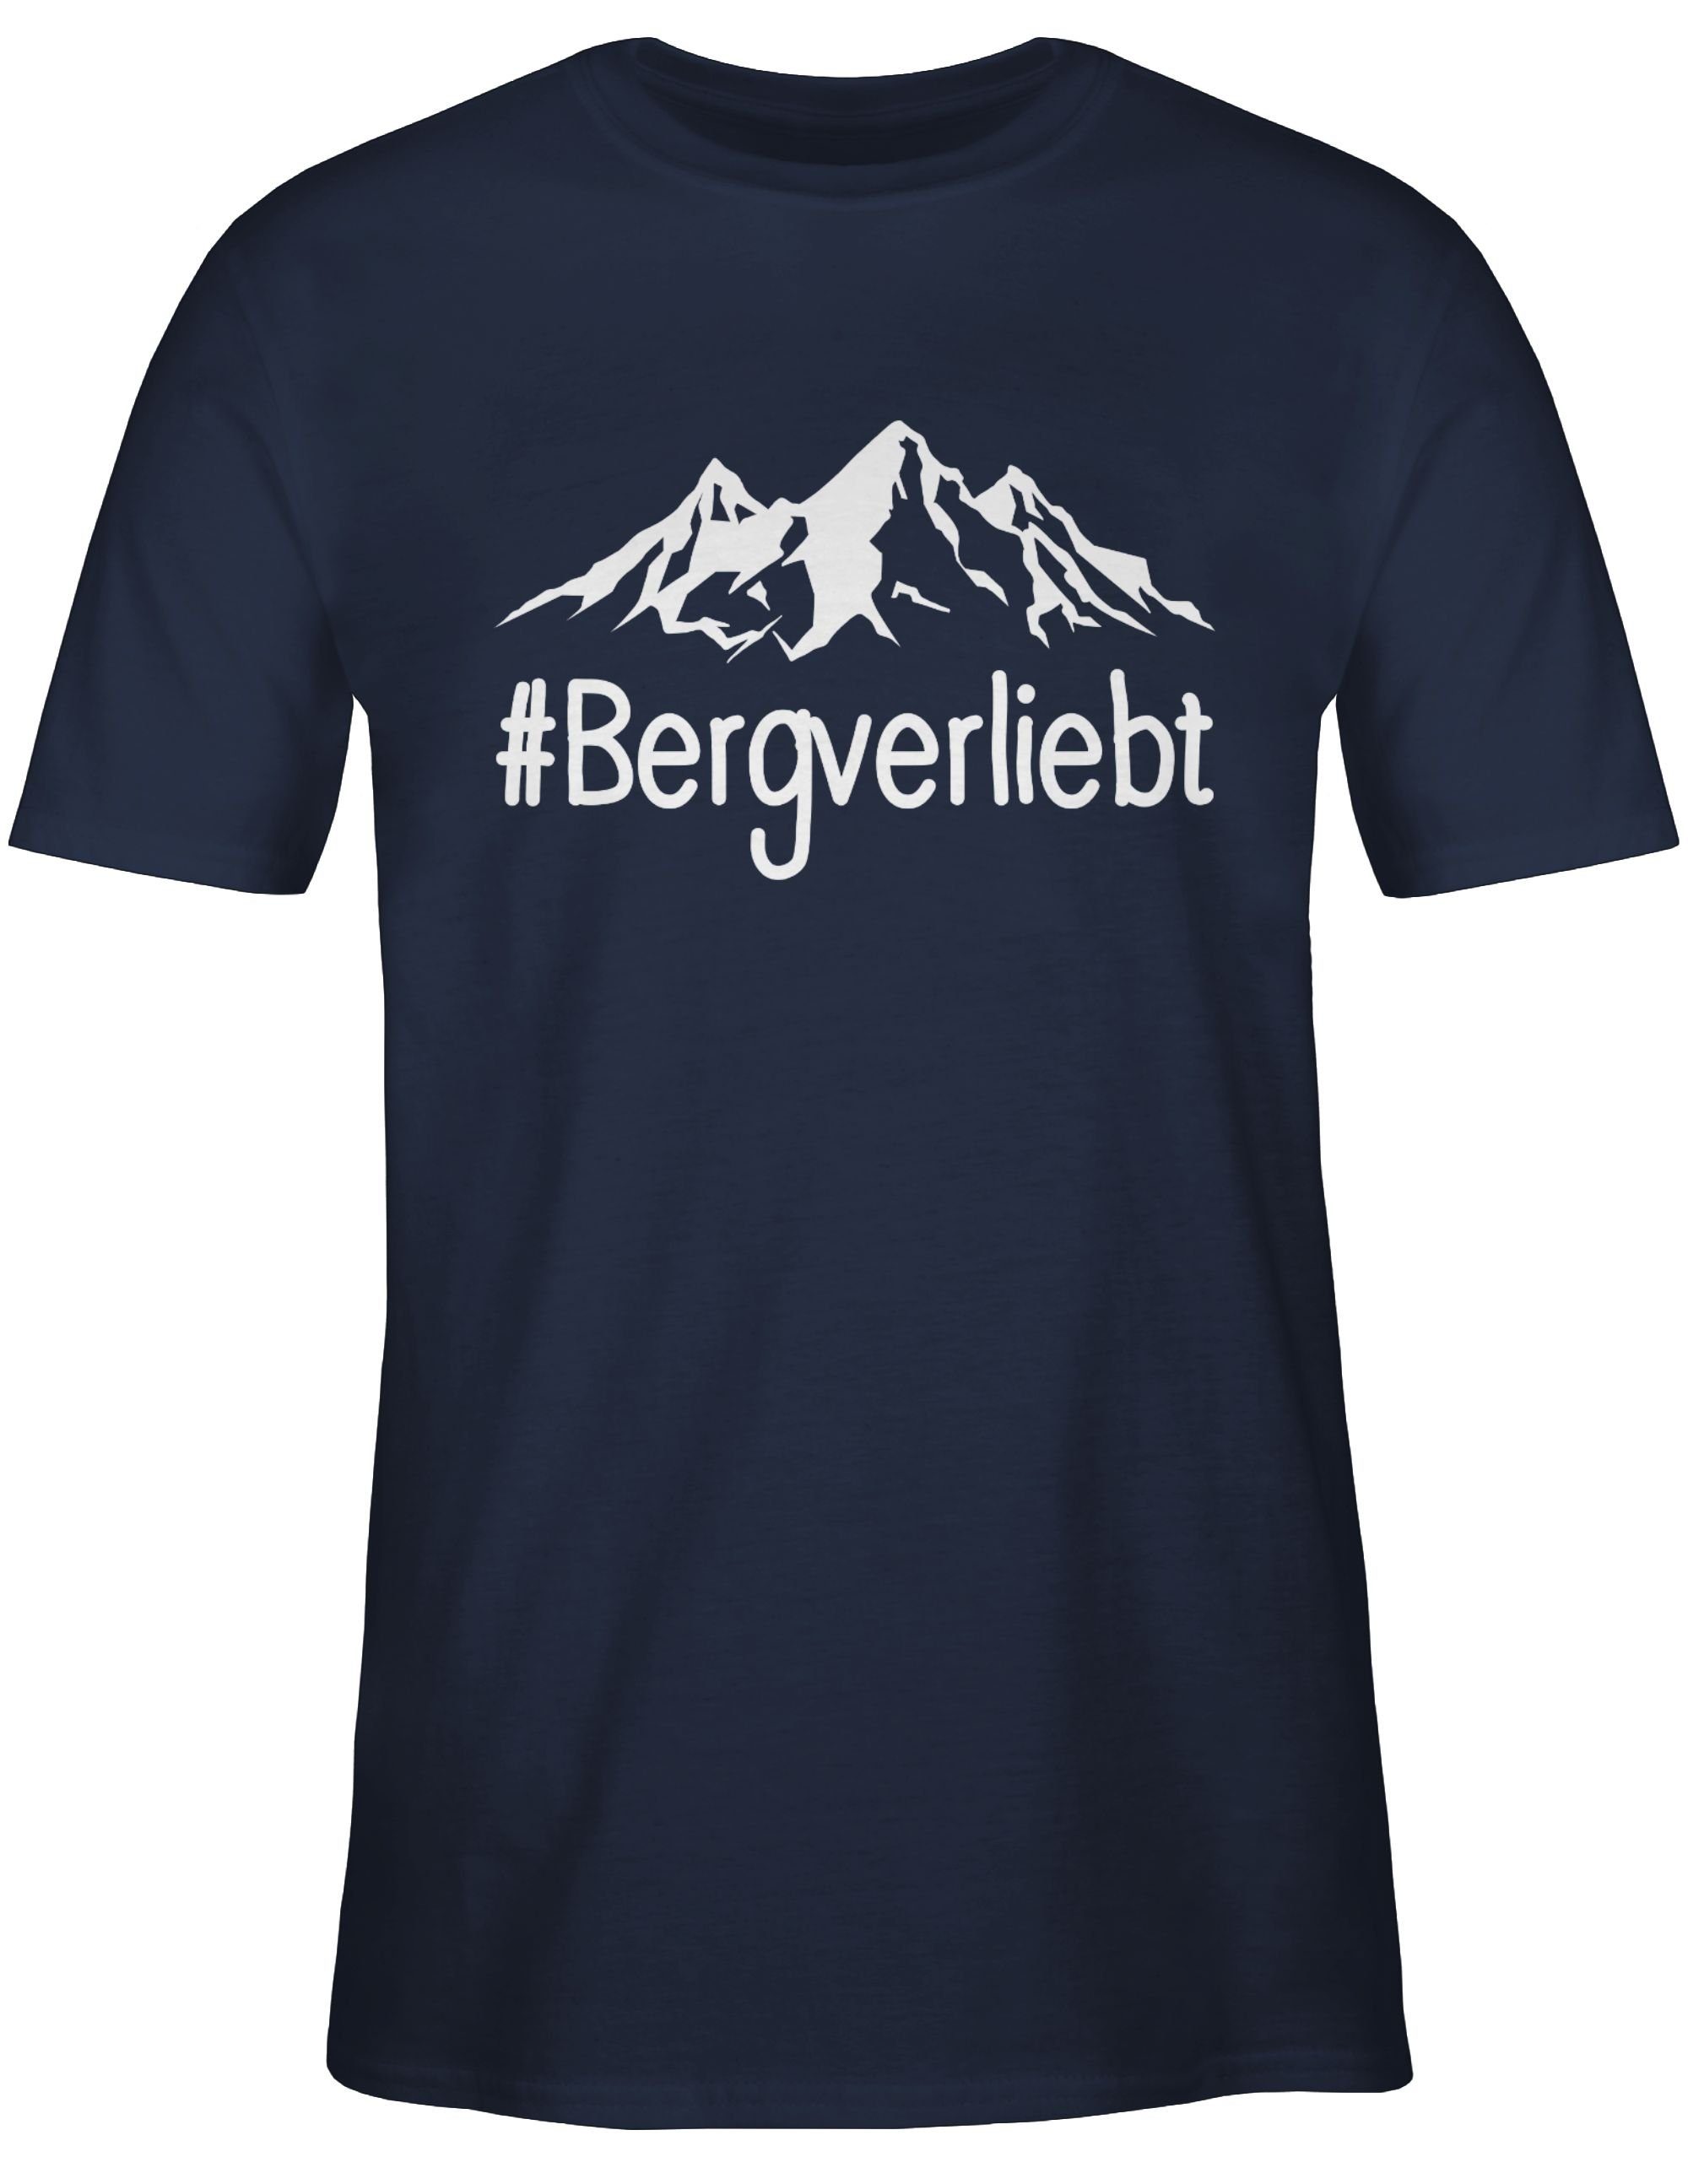 Sport weiß Blau Navy Bergverliebt T-Shirt Shirtracer Zubehör - 01